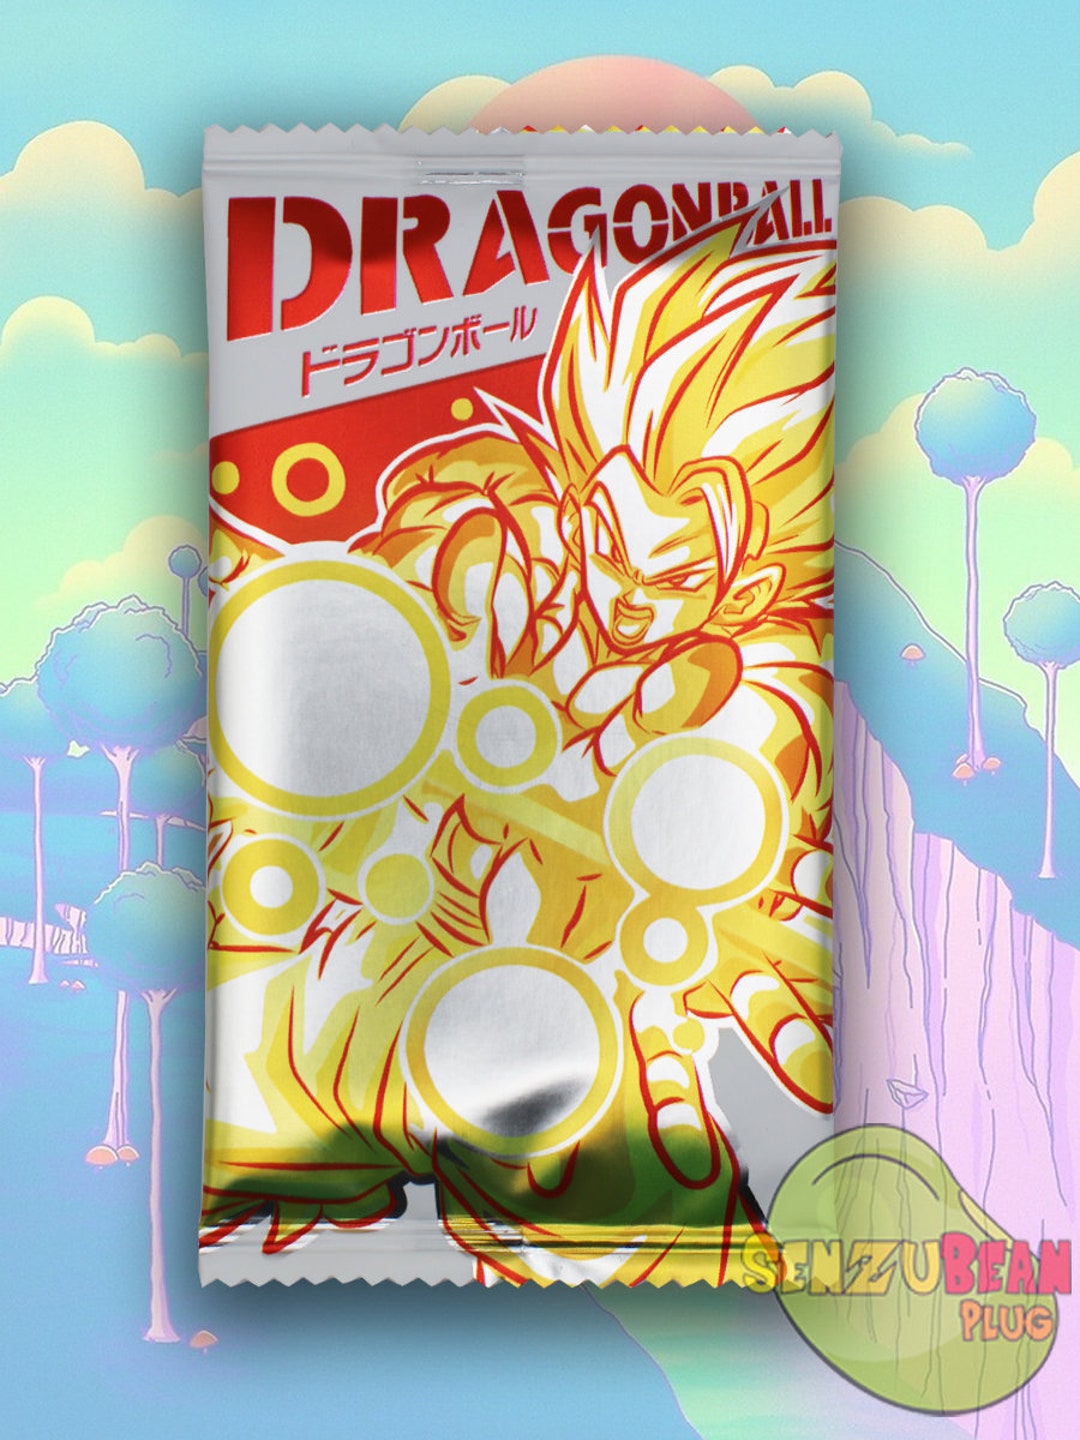 Dragon Ball Z Saiyan Saga CCG / TCG Single Cards - Select From List